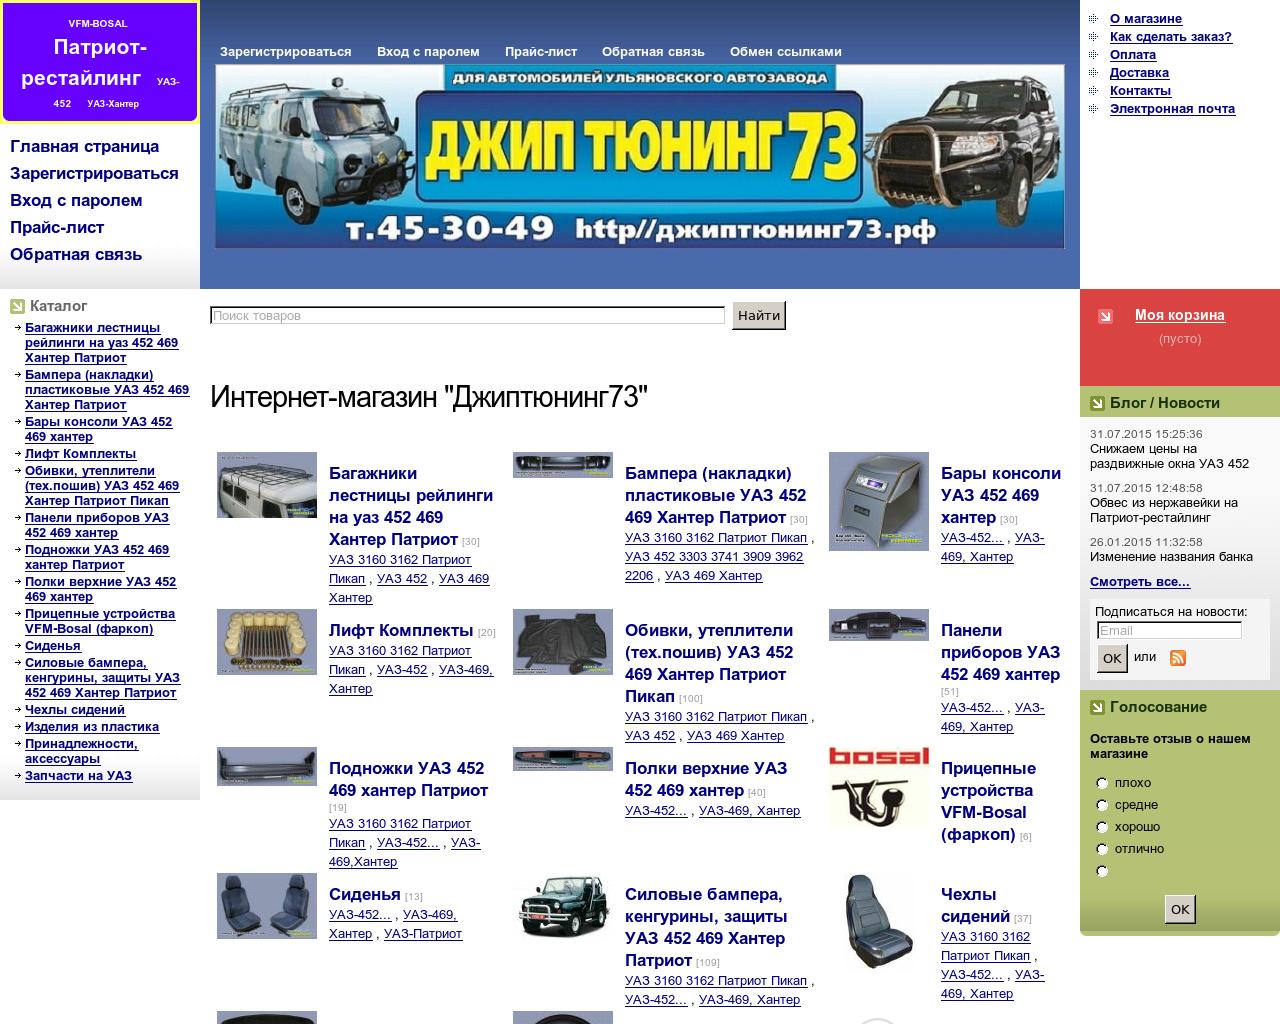 Изображение сайта uazlux.ru в разрешении 1280x1024